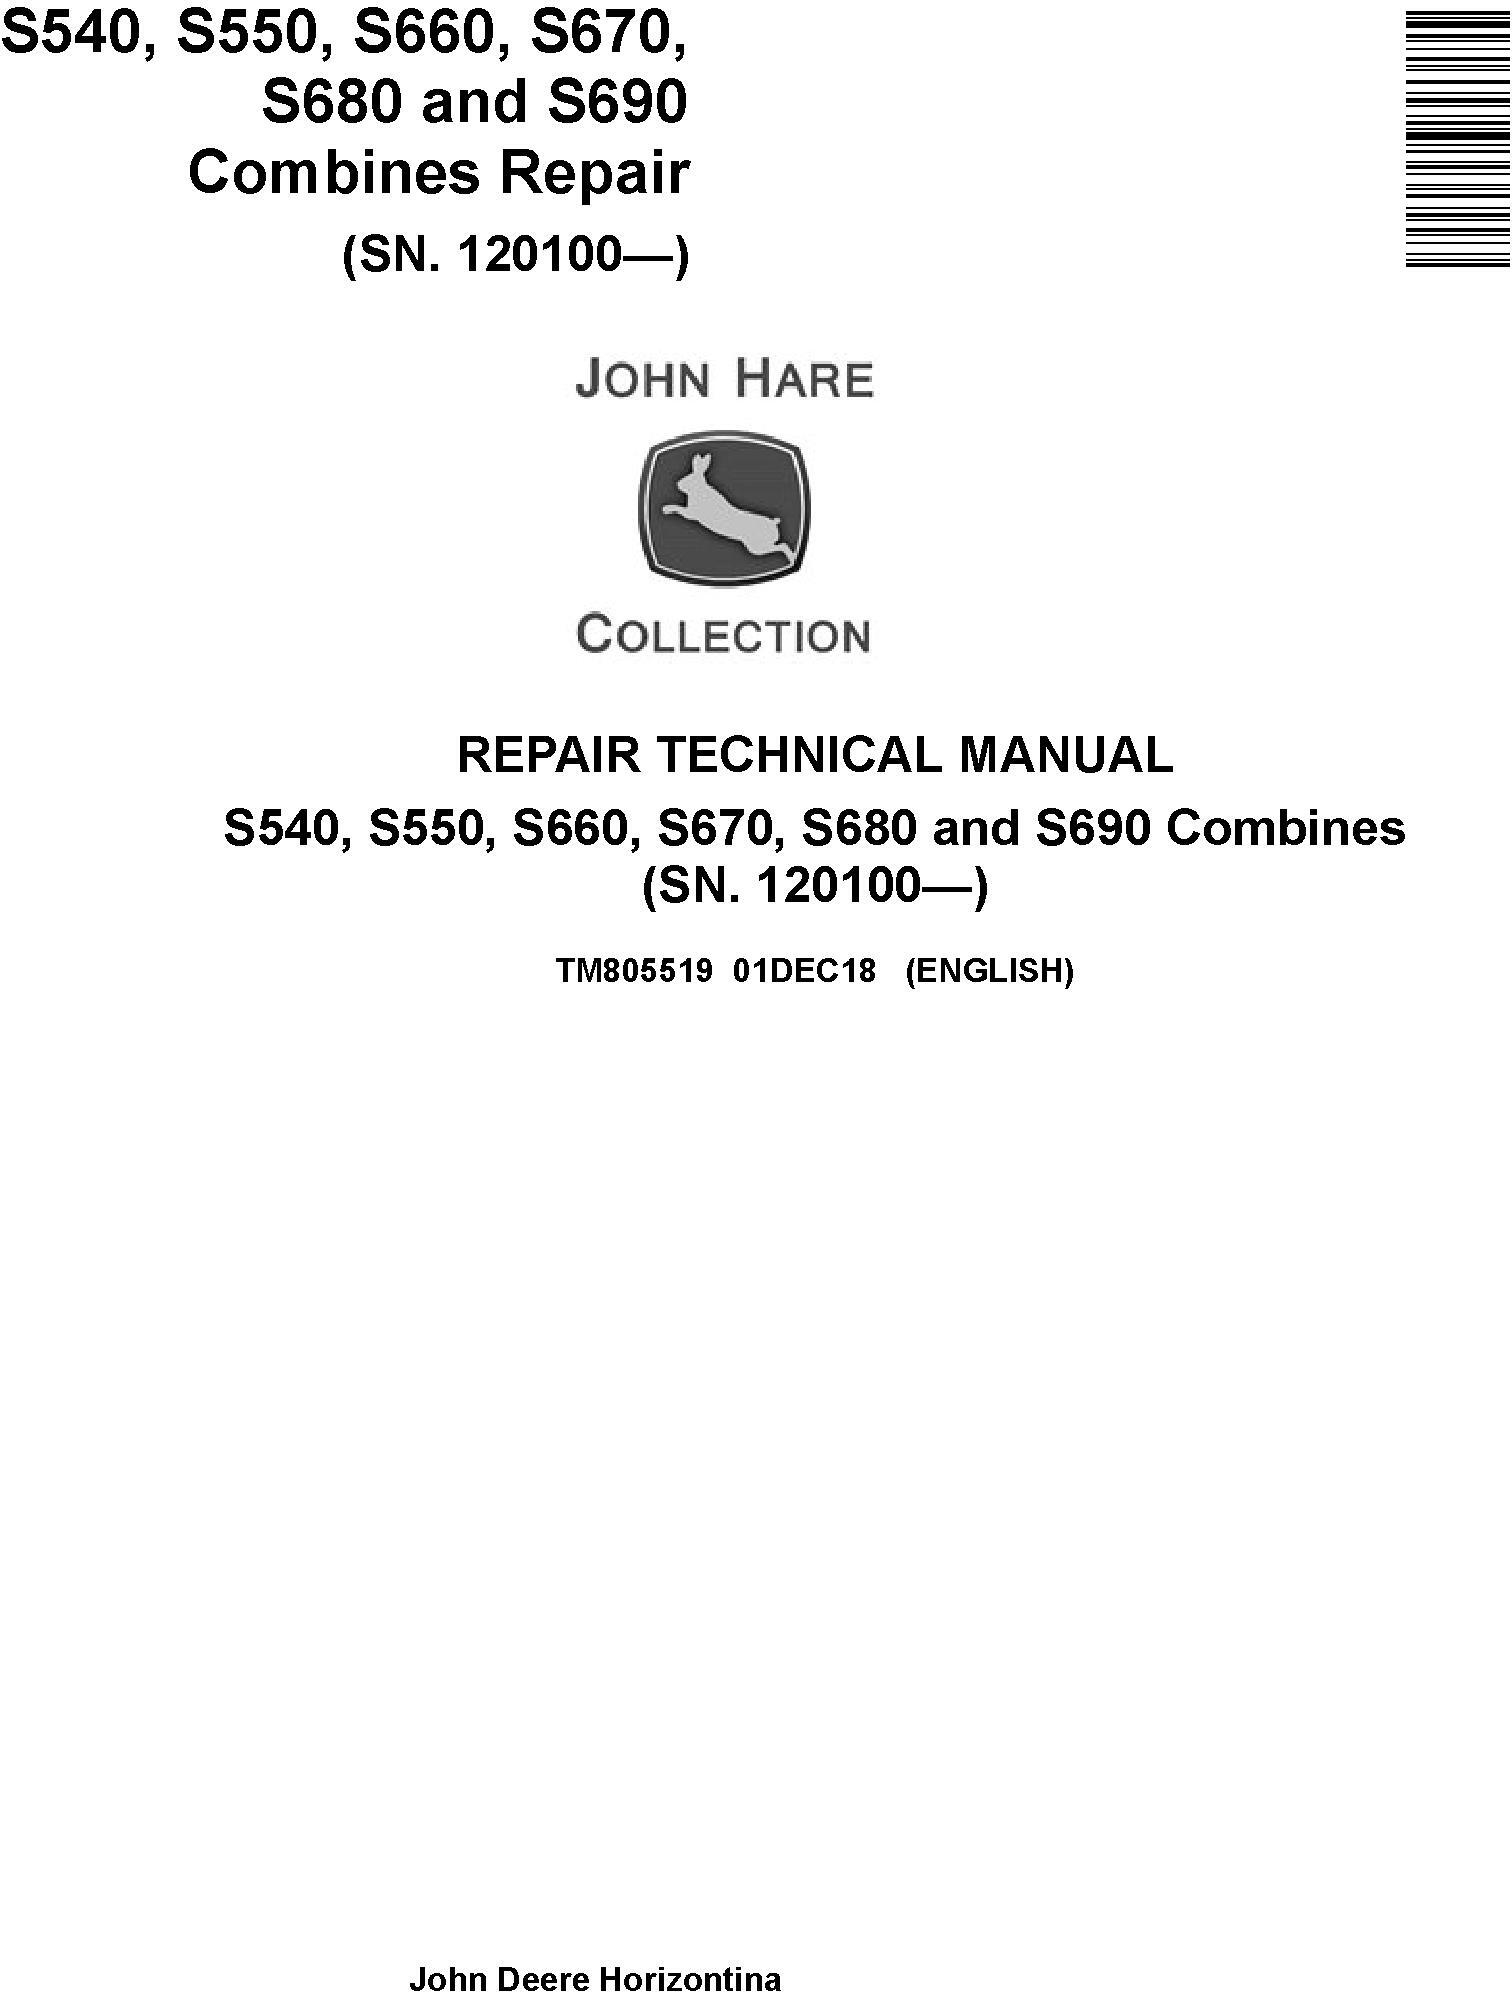 John Deere S540 to S690 Combine Technical Manual TM805519